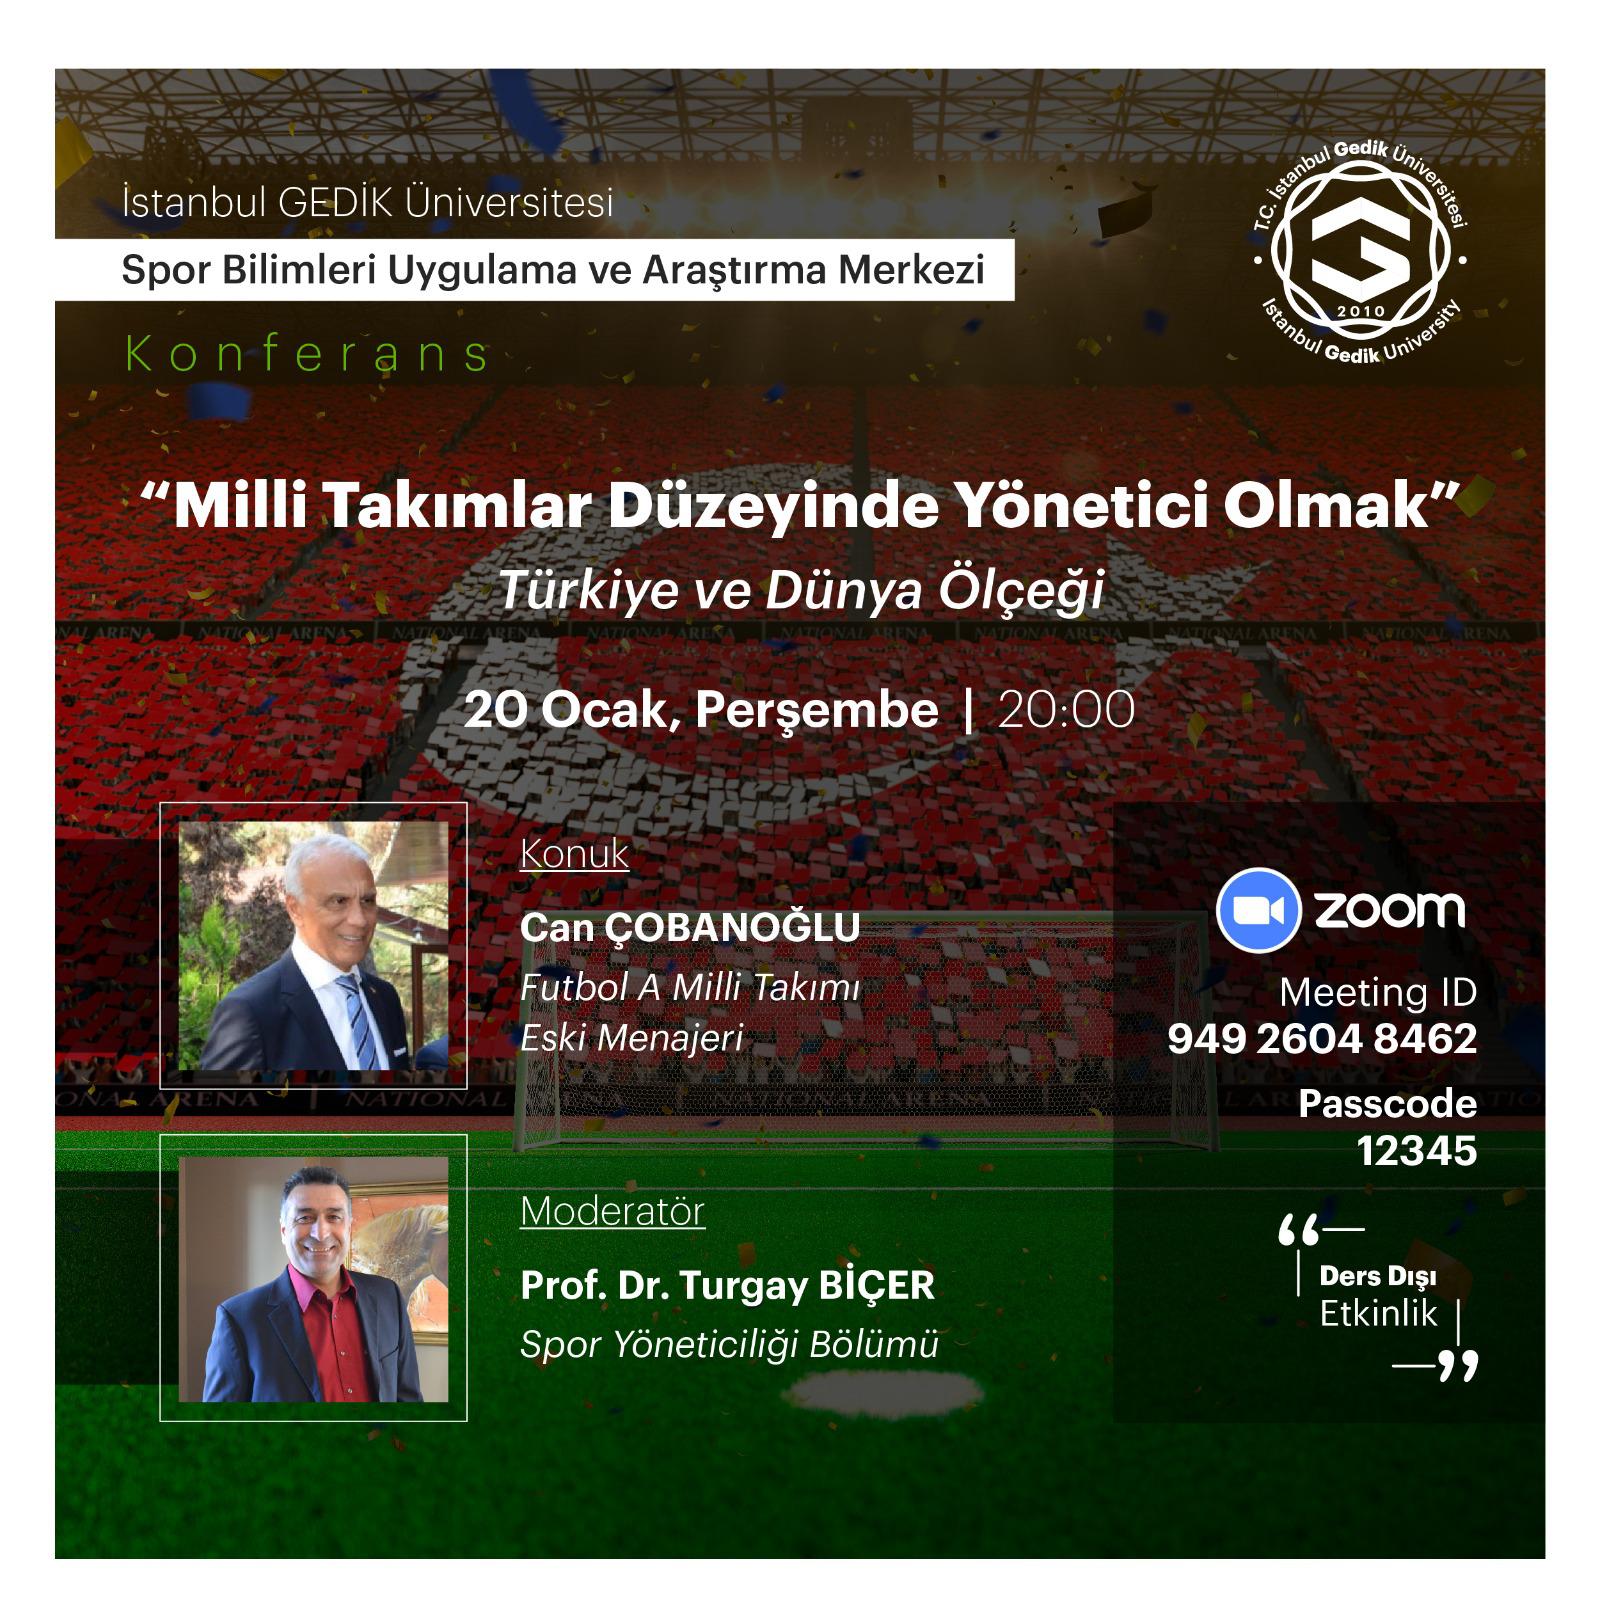 Milli Takımlar Düzeyinde Yönetici olmak-Türkiye ve Dünya Ölçeği Konulu Konferans